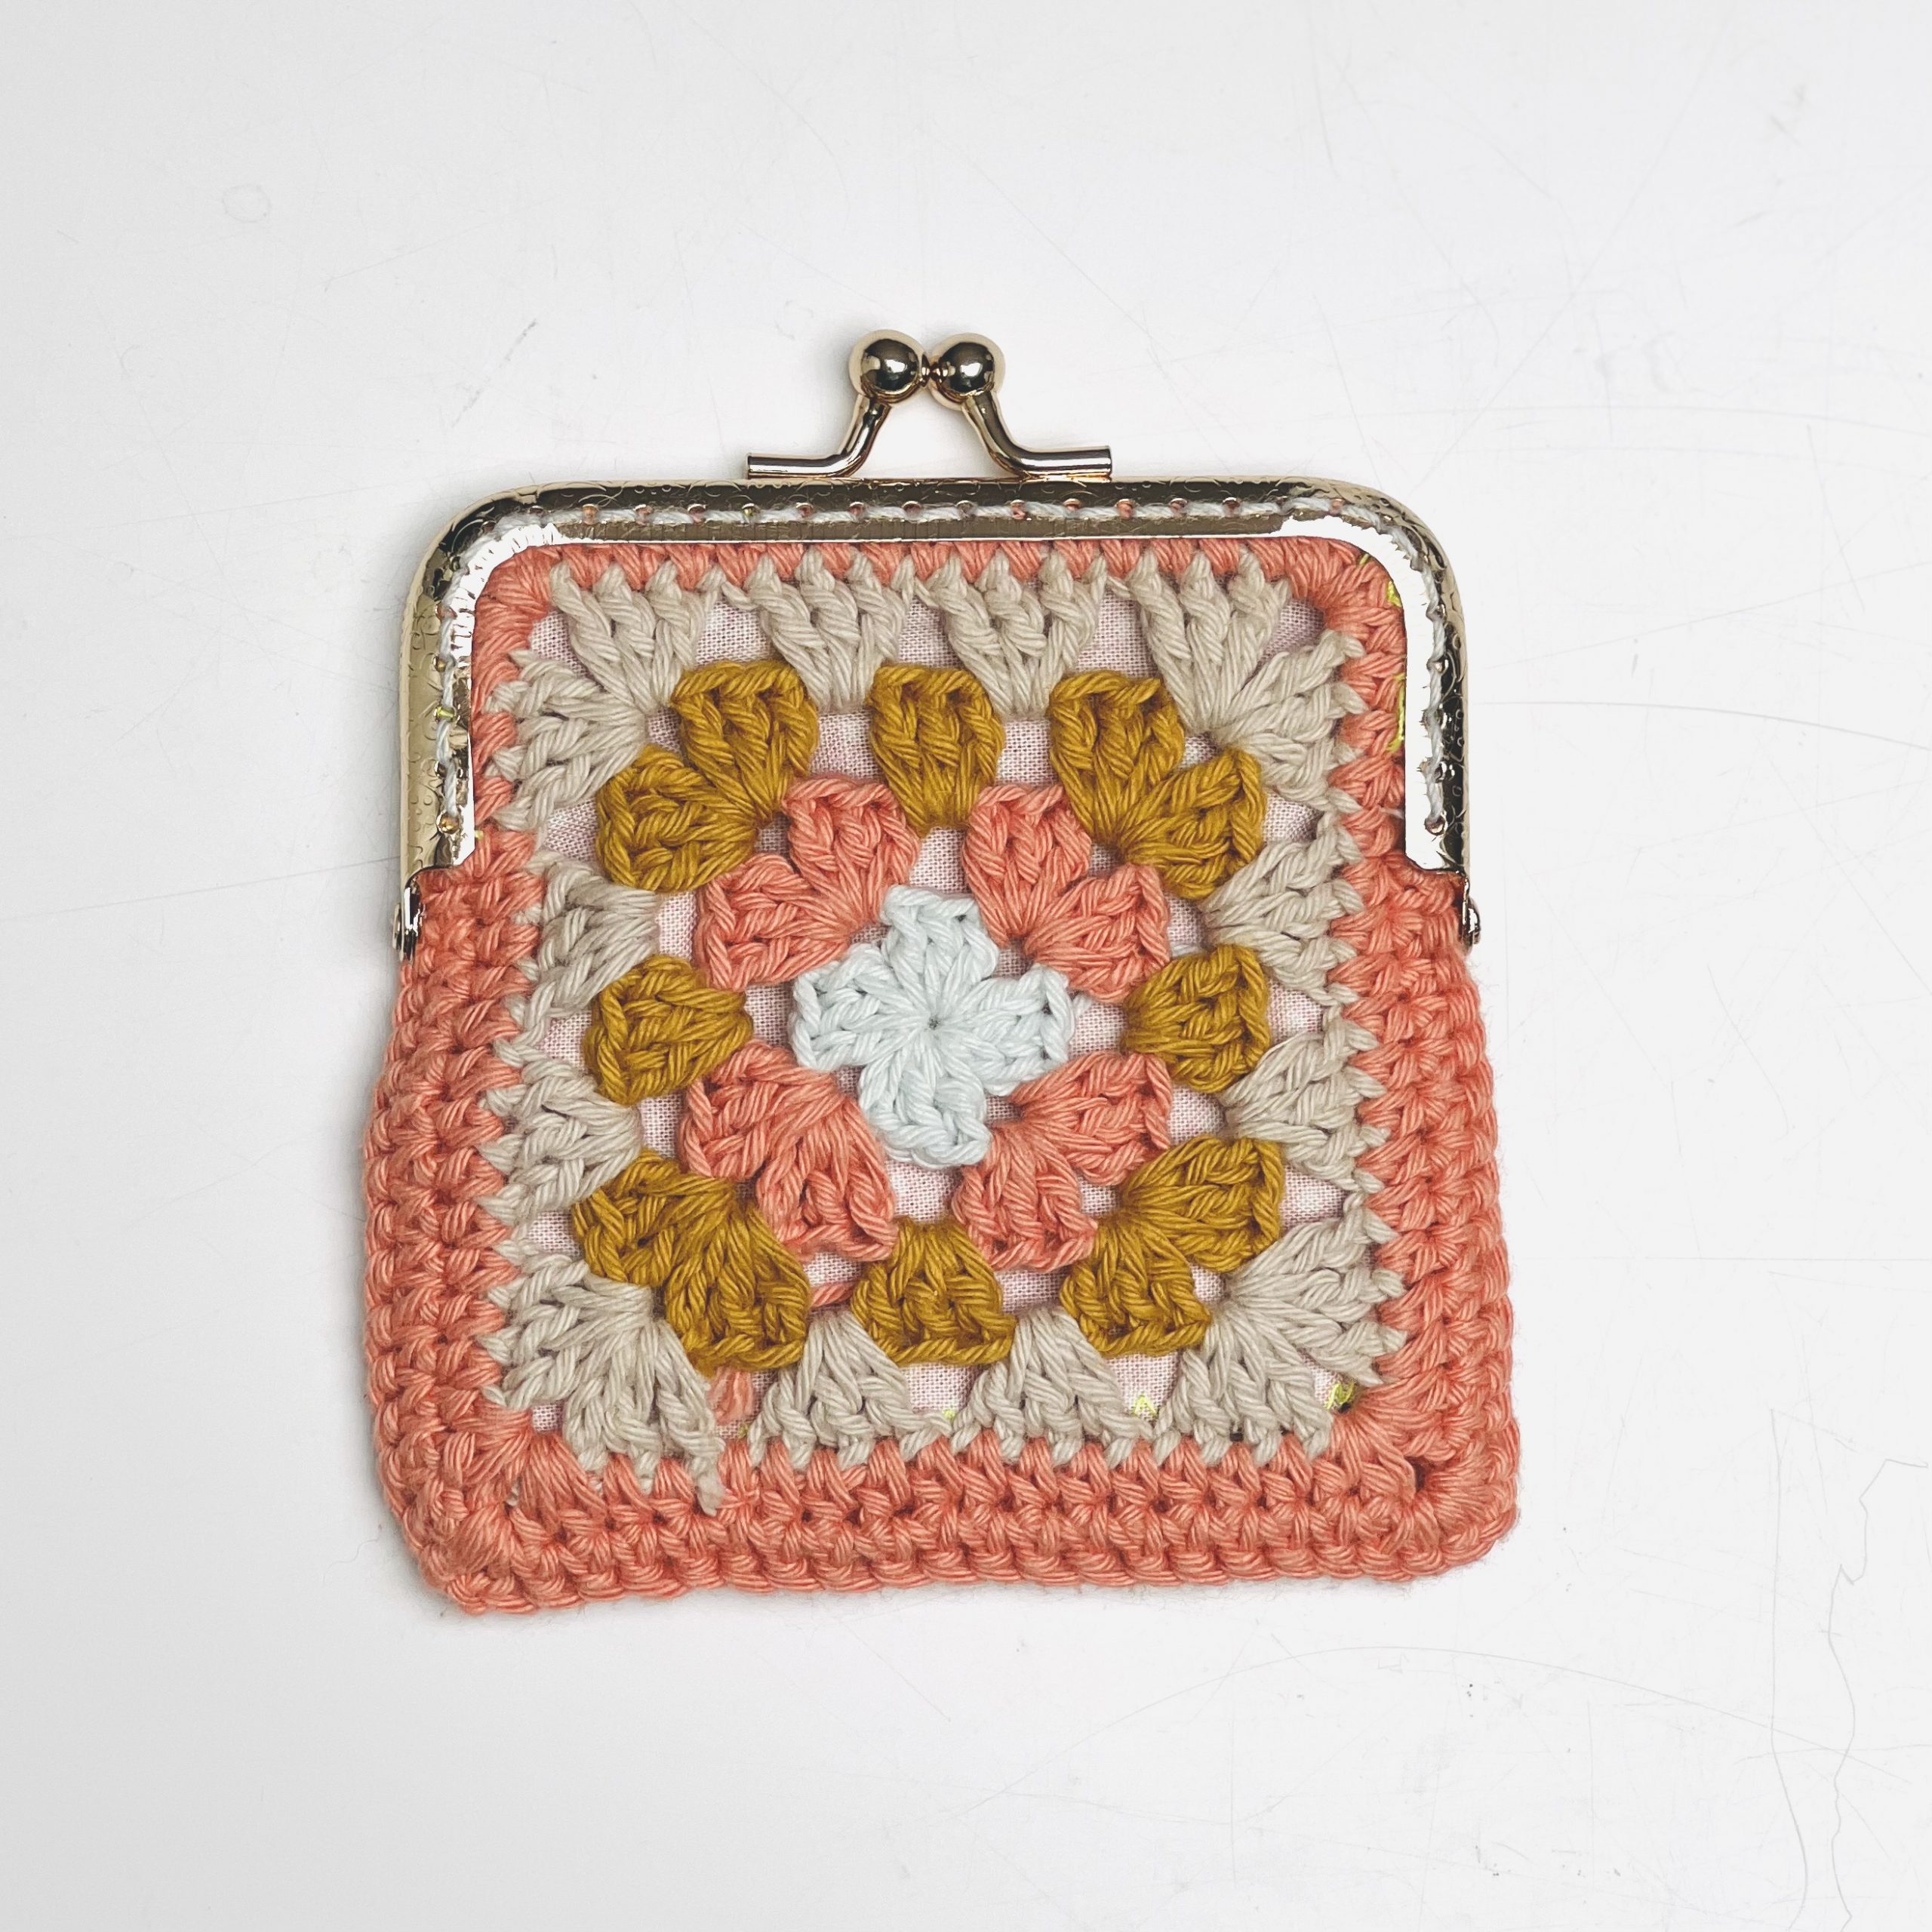 Tuto crochet : mon cabas en granny squares – L'Atelier d'Archibald